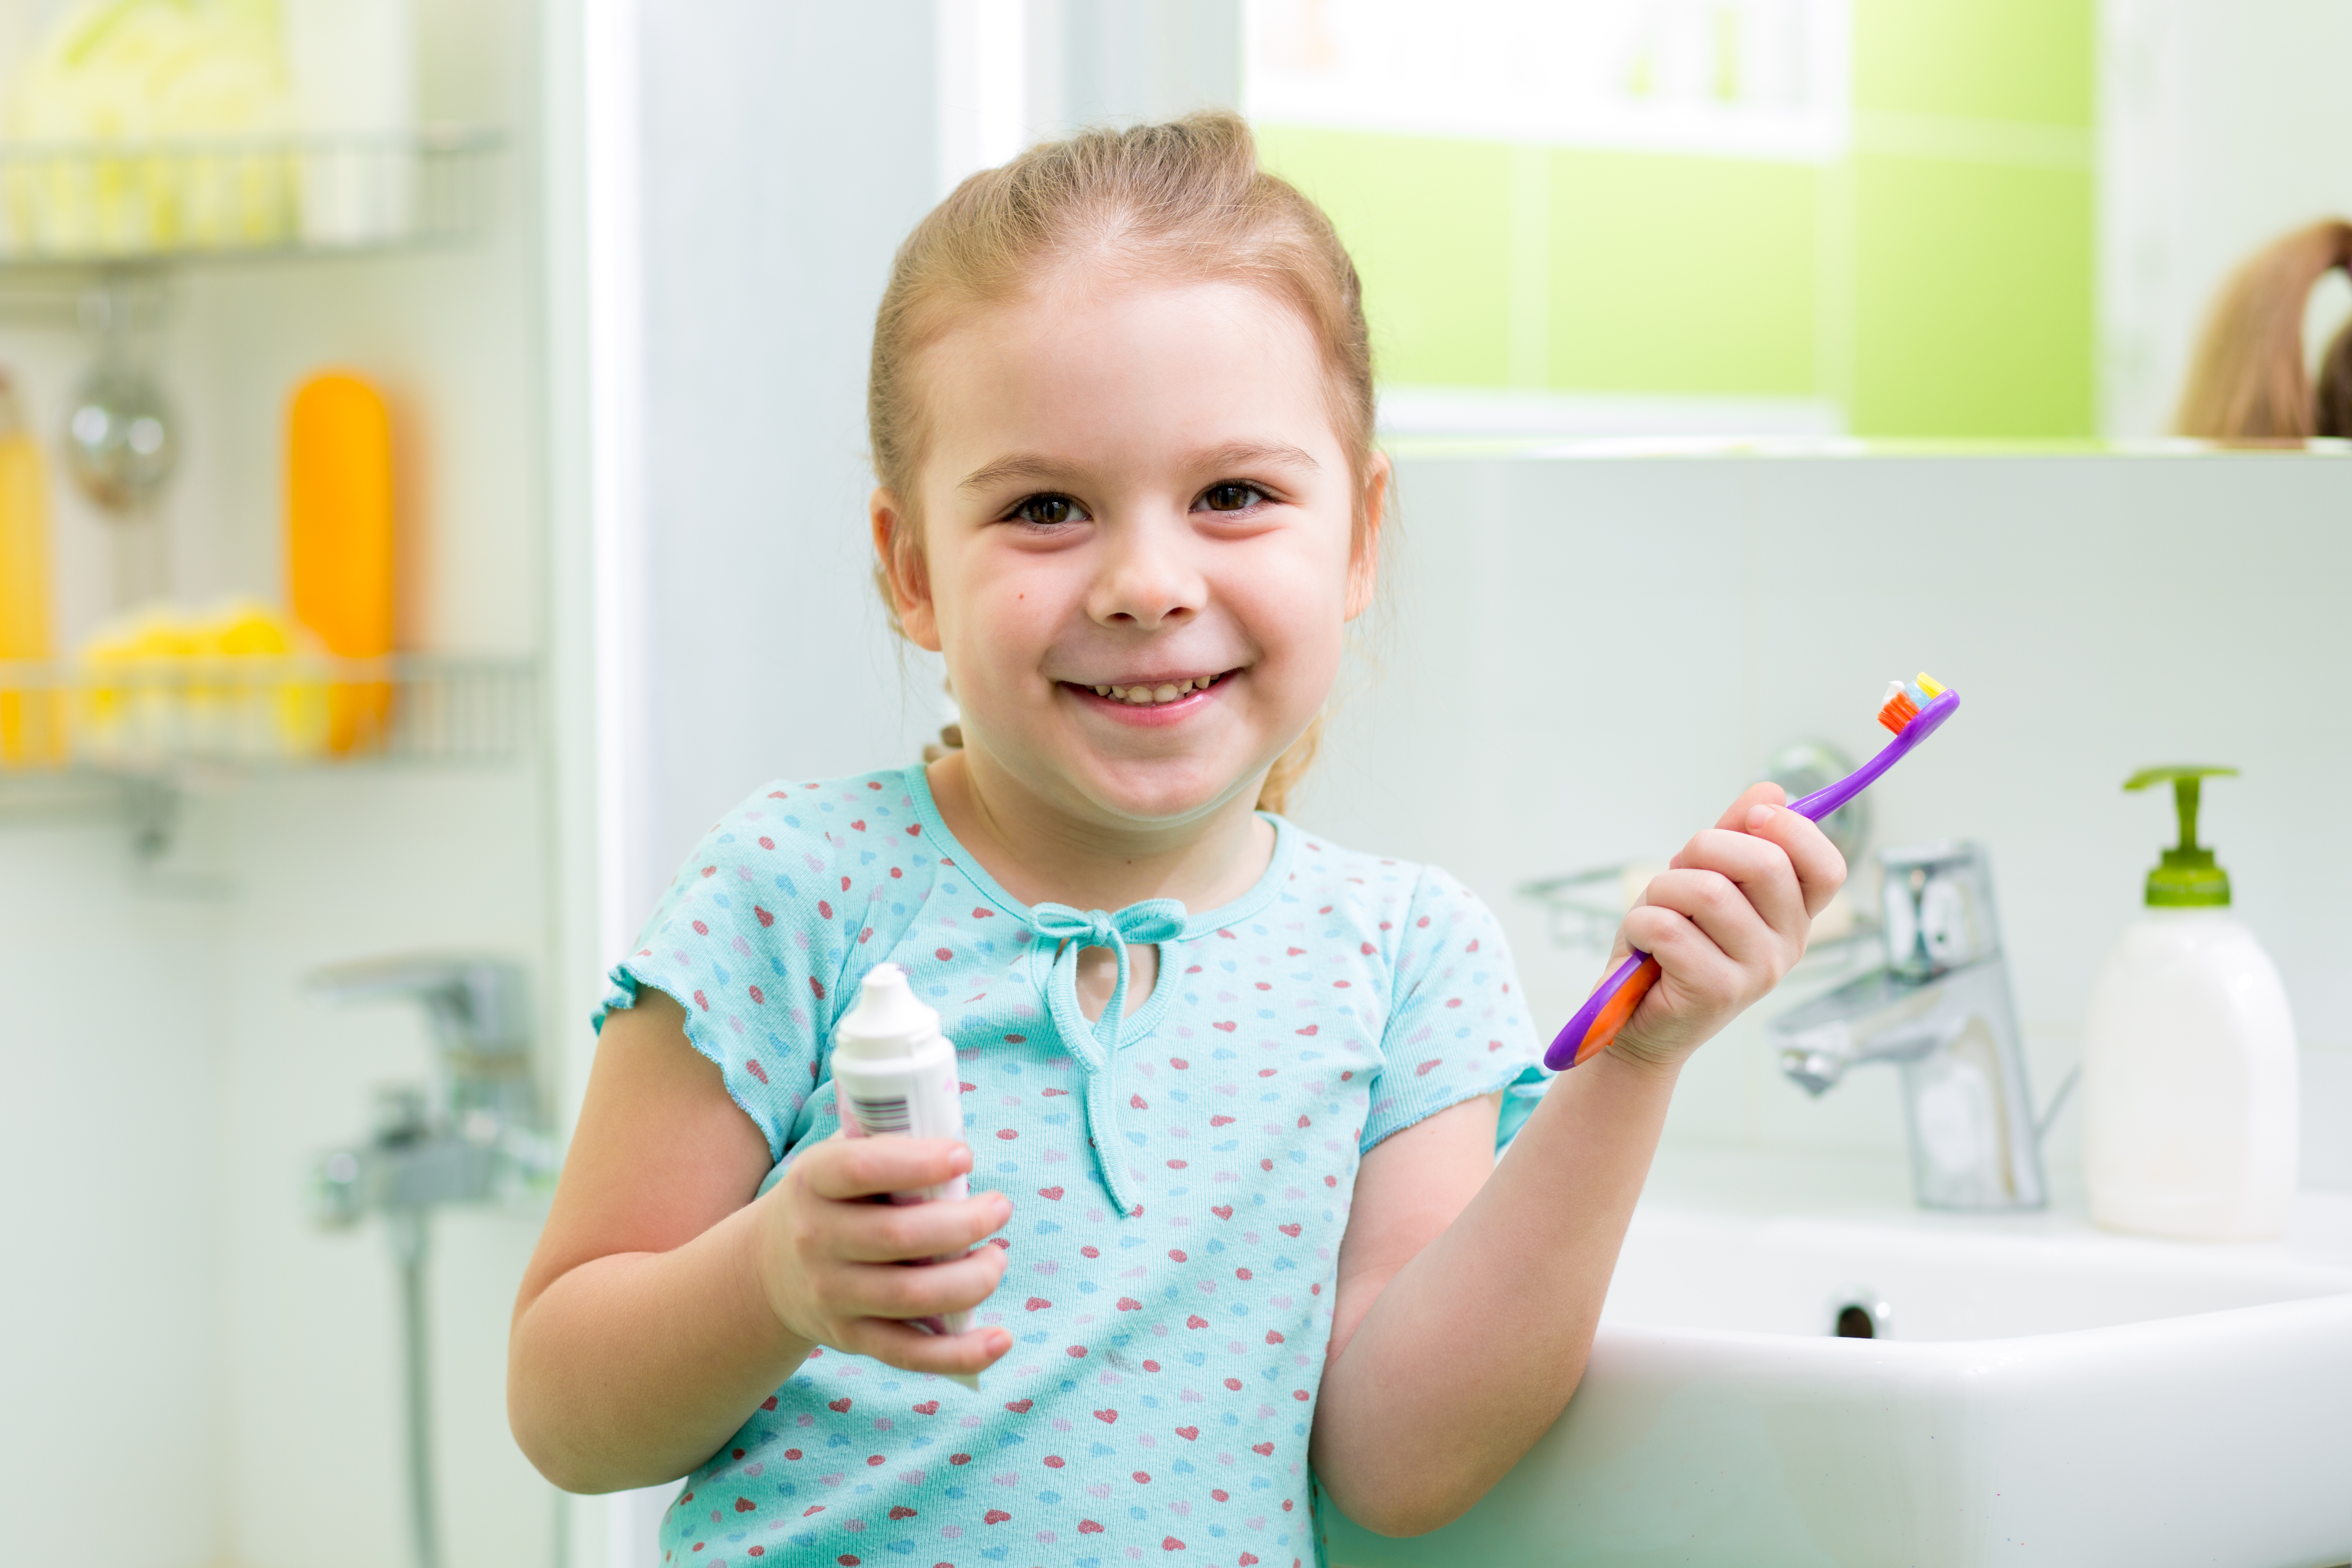 Children's oral health